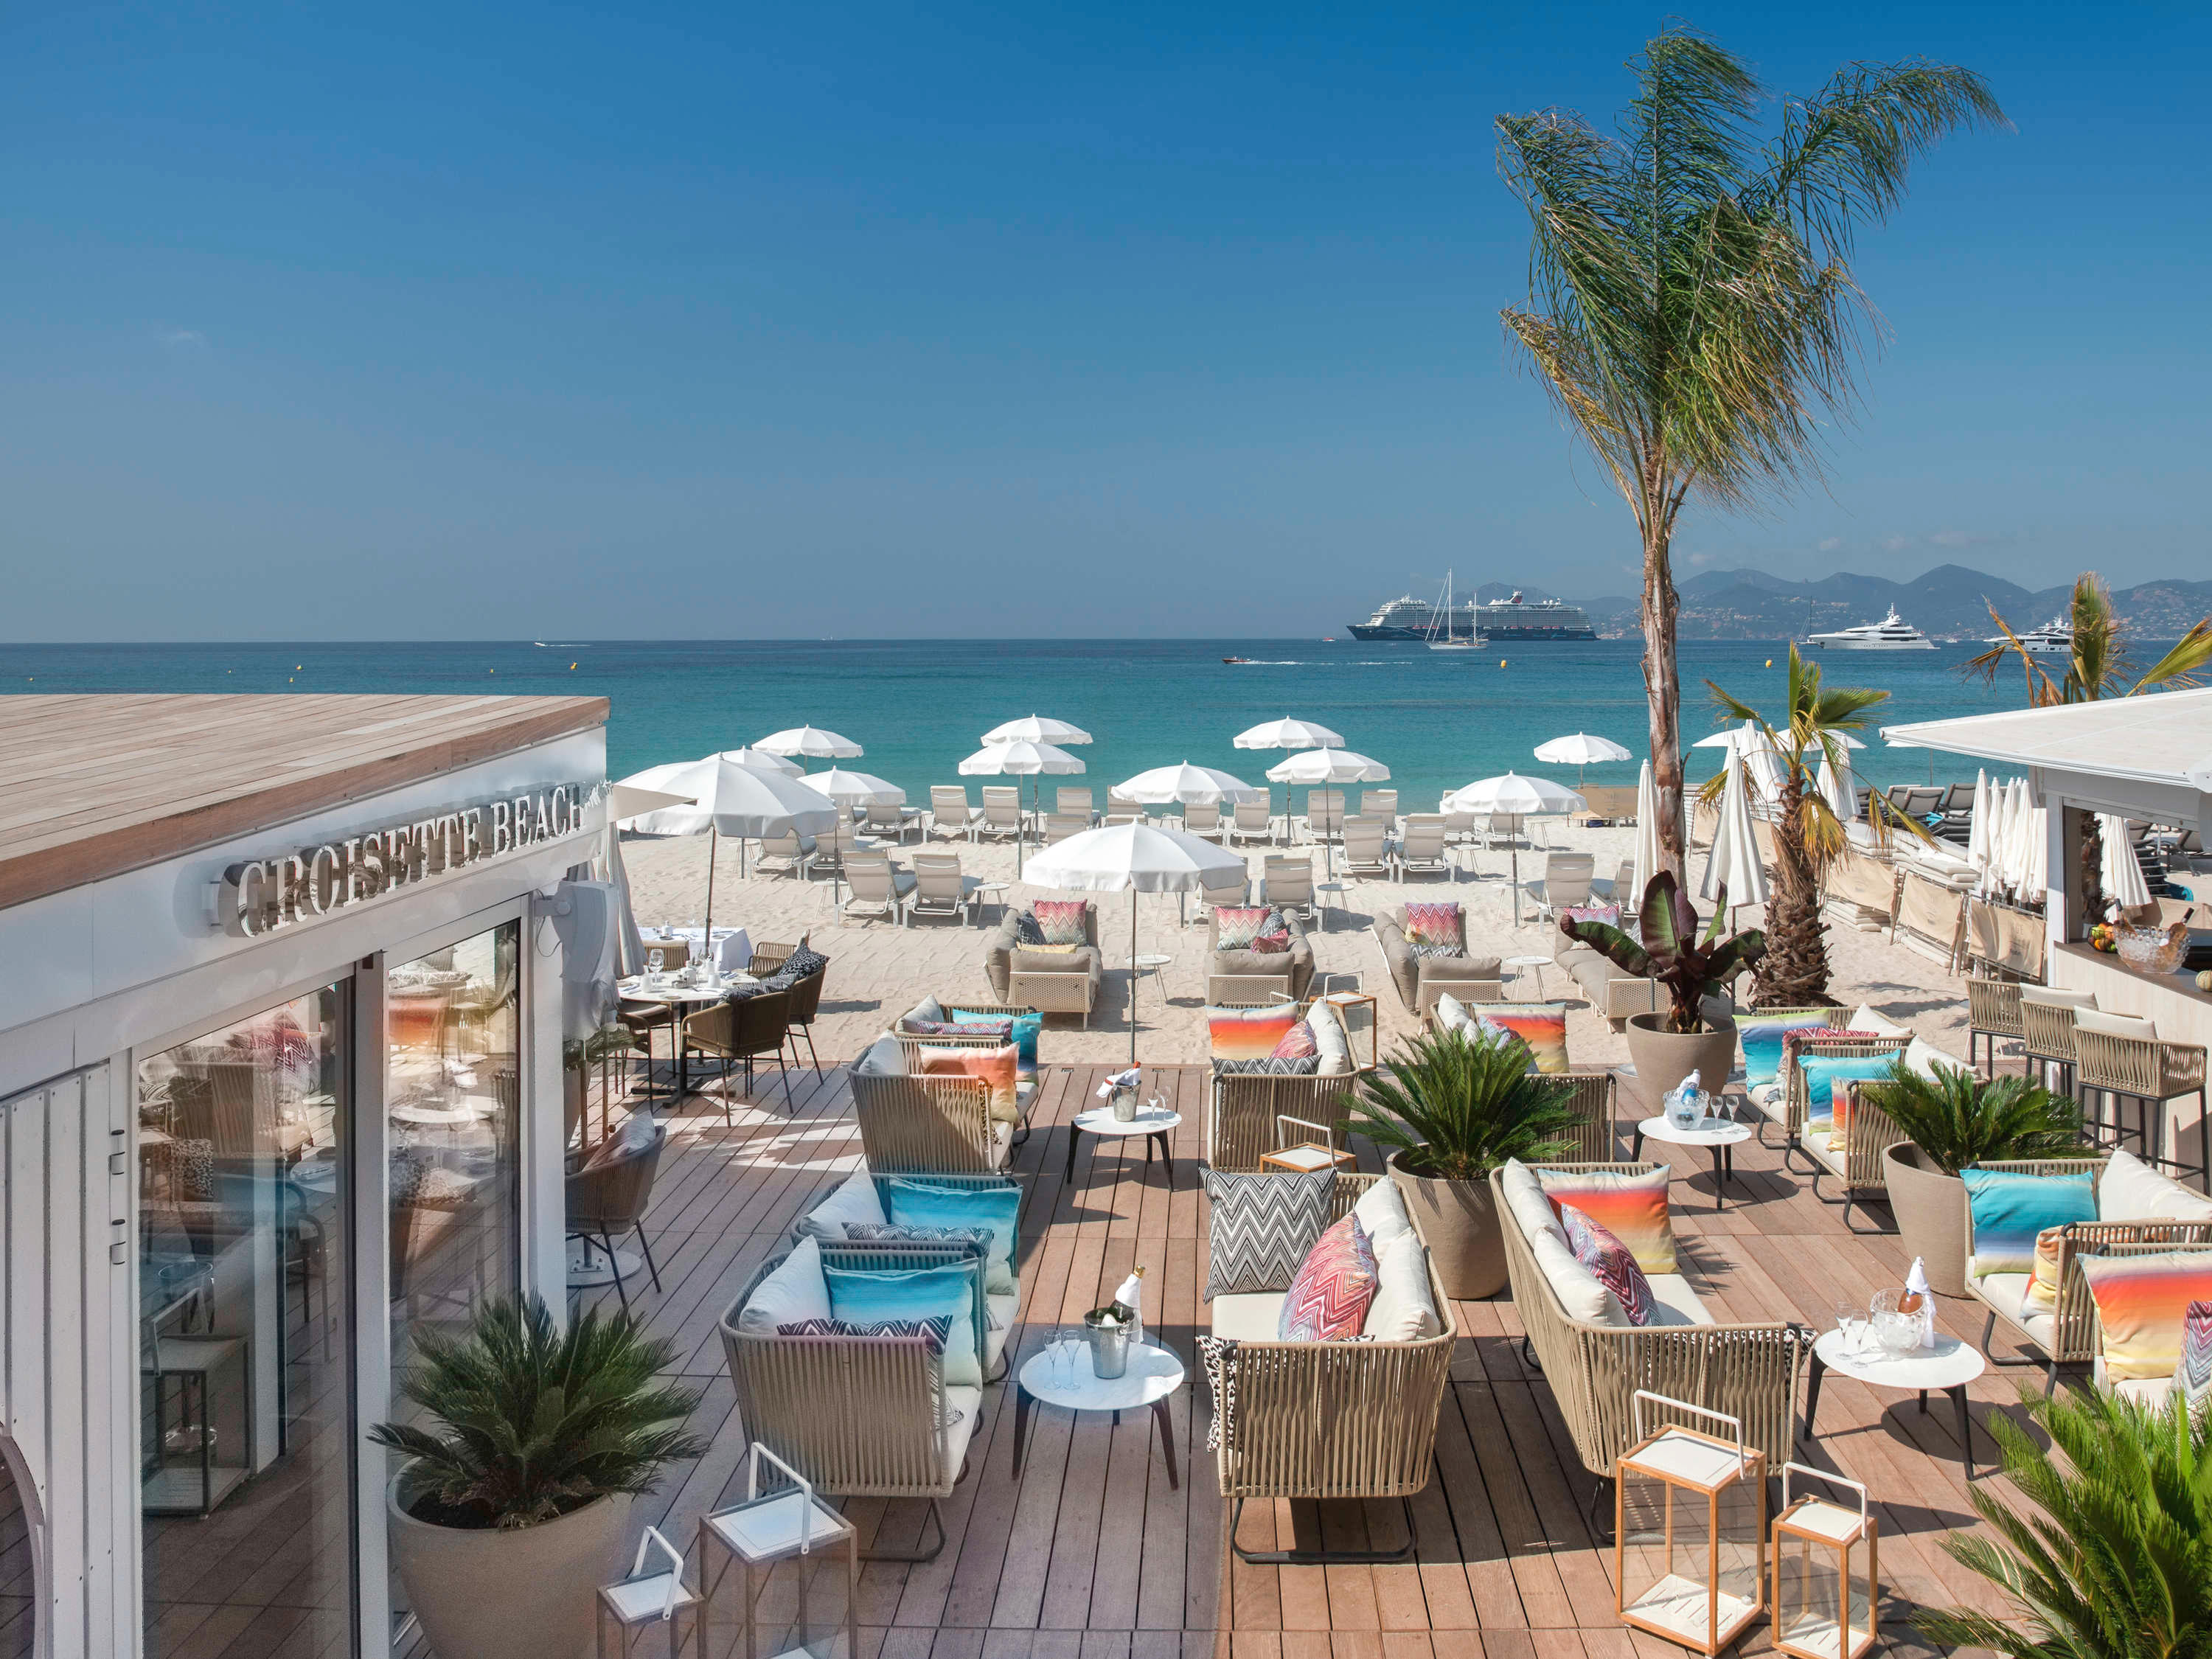 Plage Privée Croisette Beach - Restaurant - Cannes - 04 93 94 56 36 France | ShowMeLocal.com